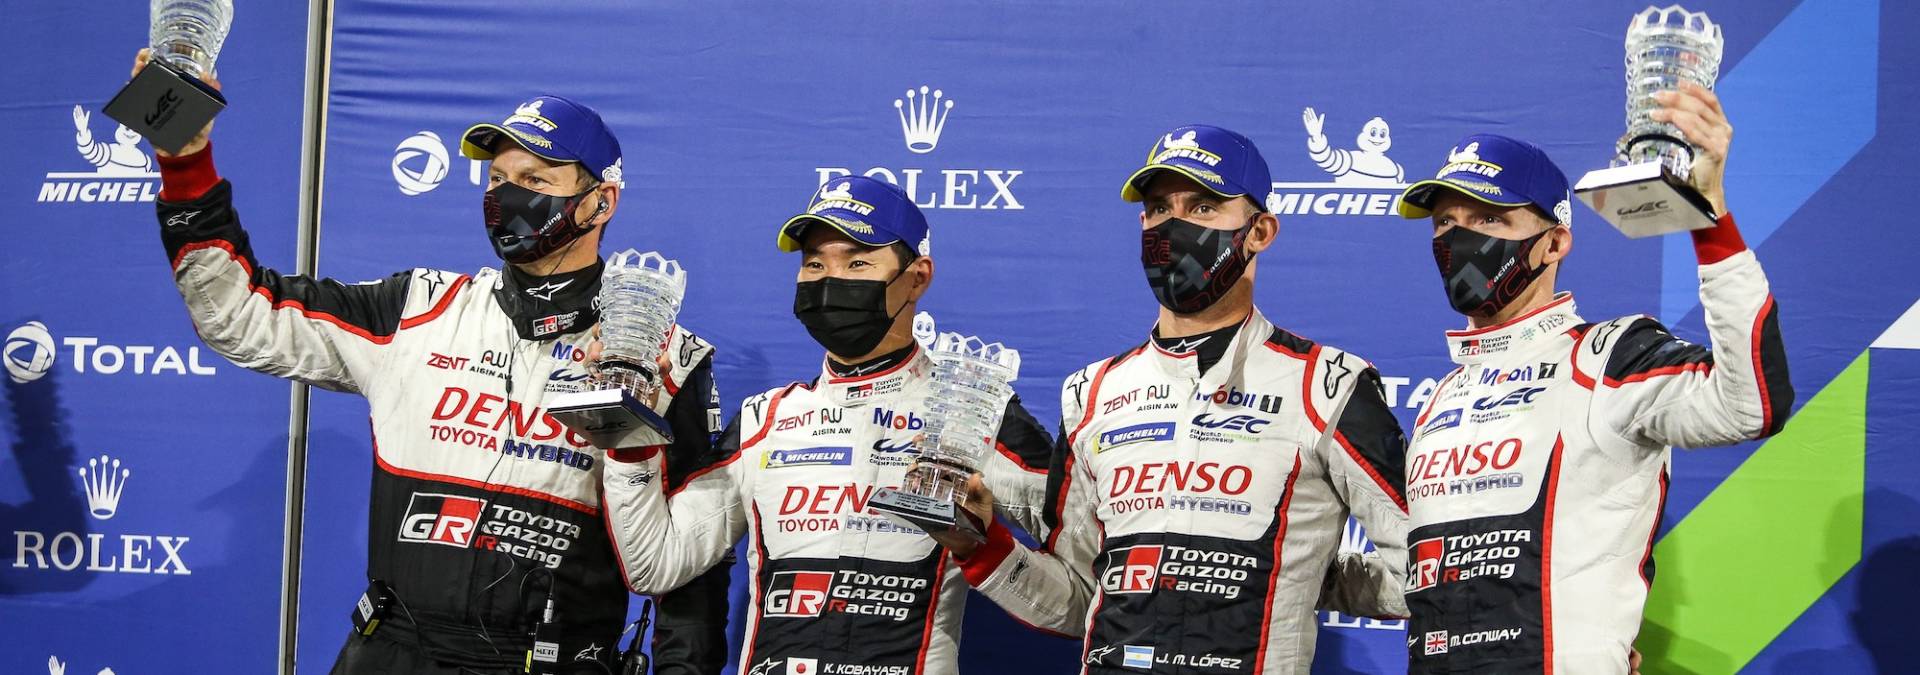 Podwójne zwycięstwo Toyoty w Bahrajnie przesądziło o mistrzowskich tytułach